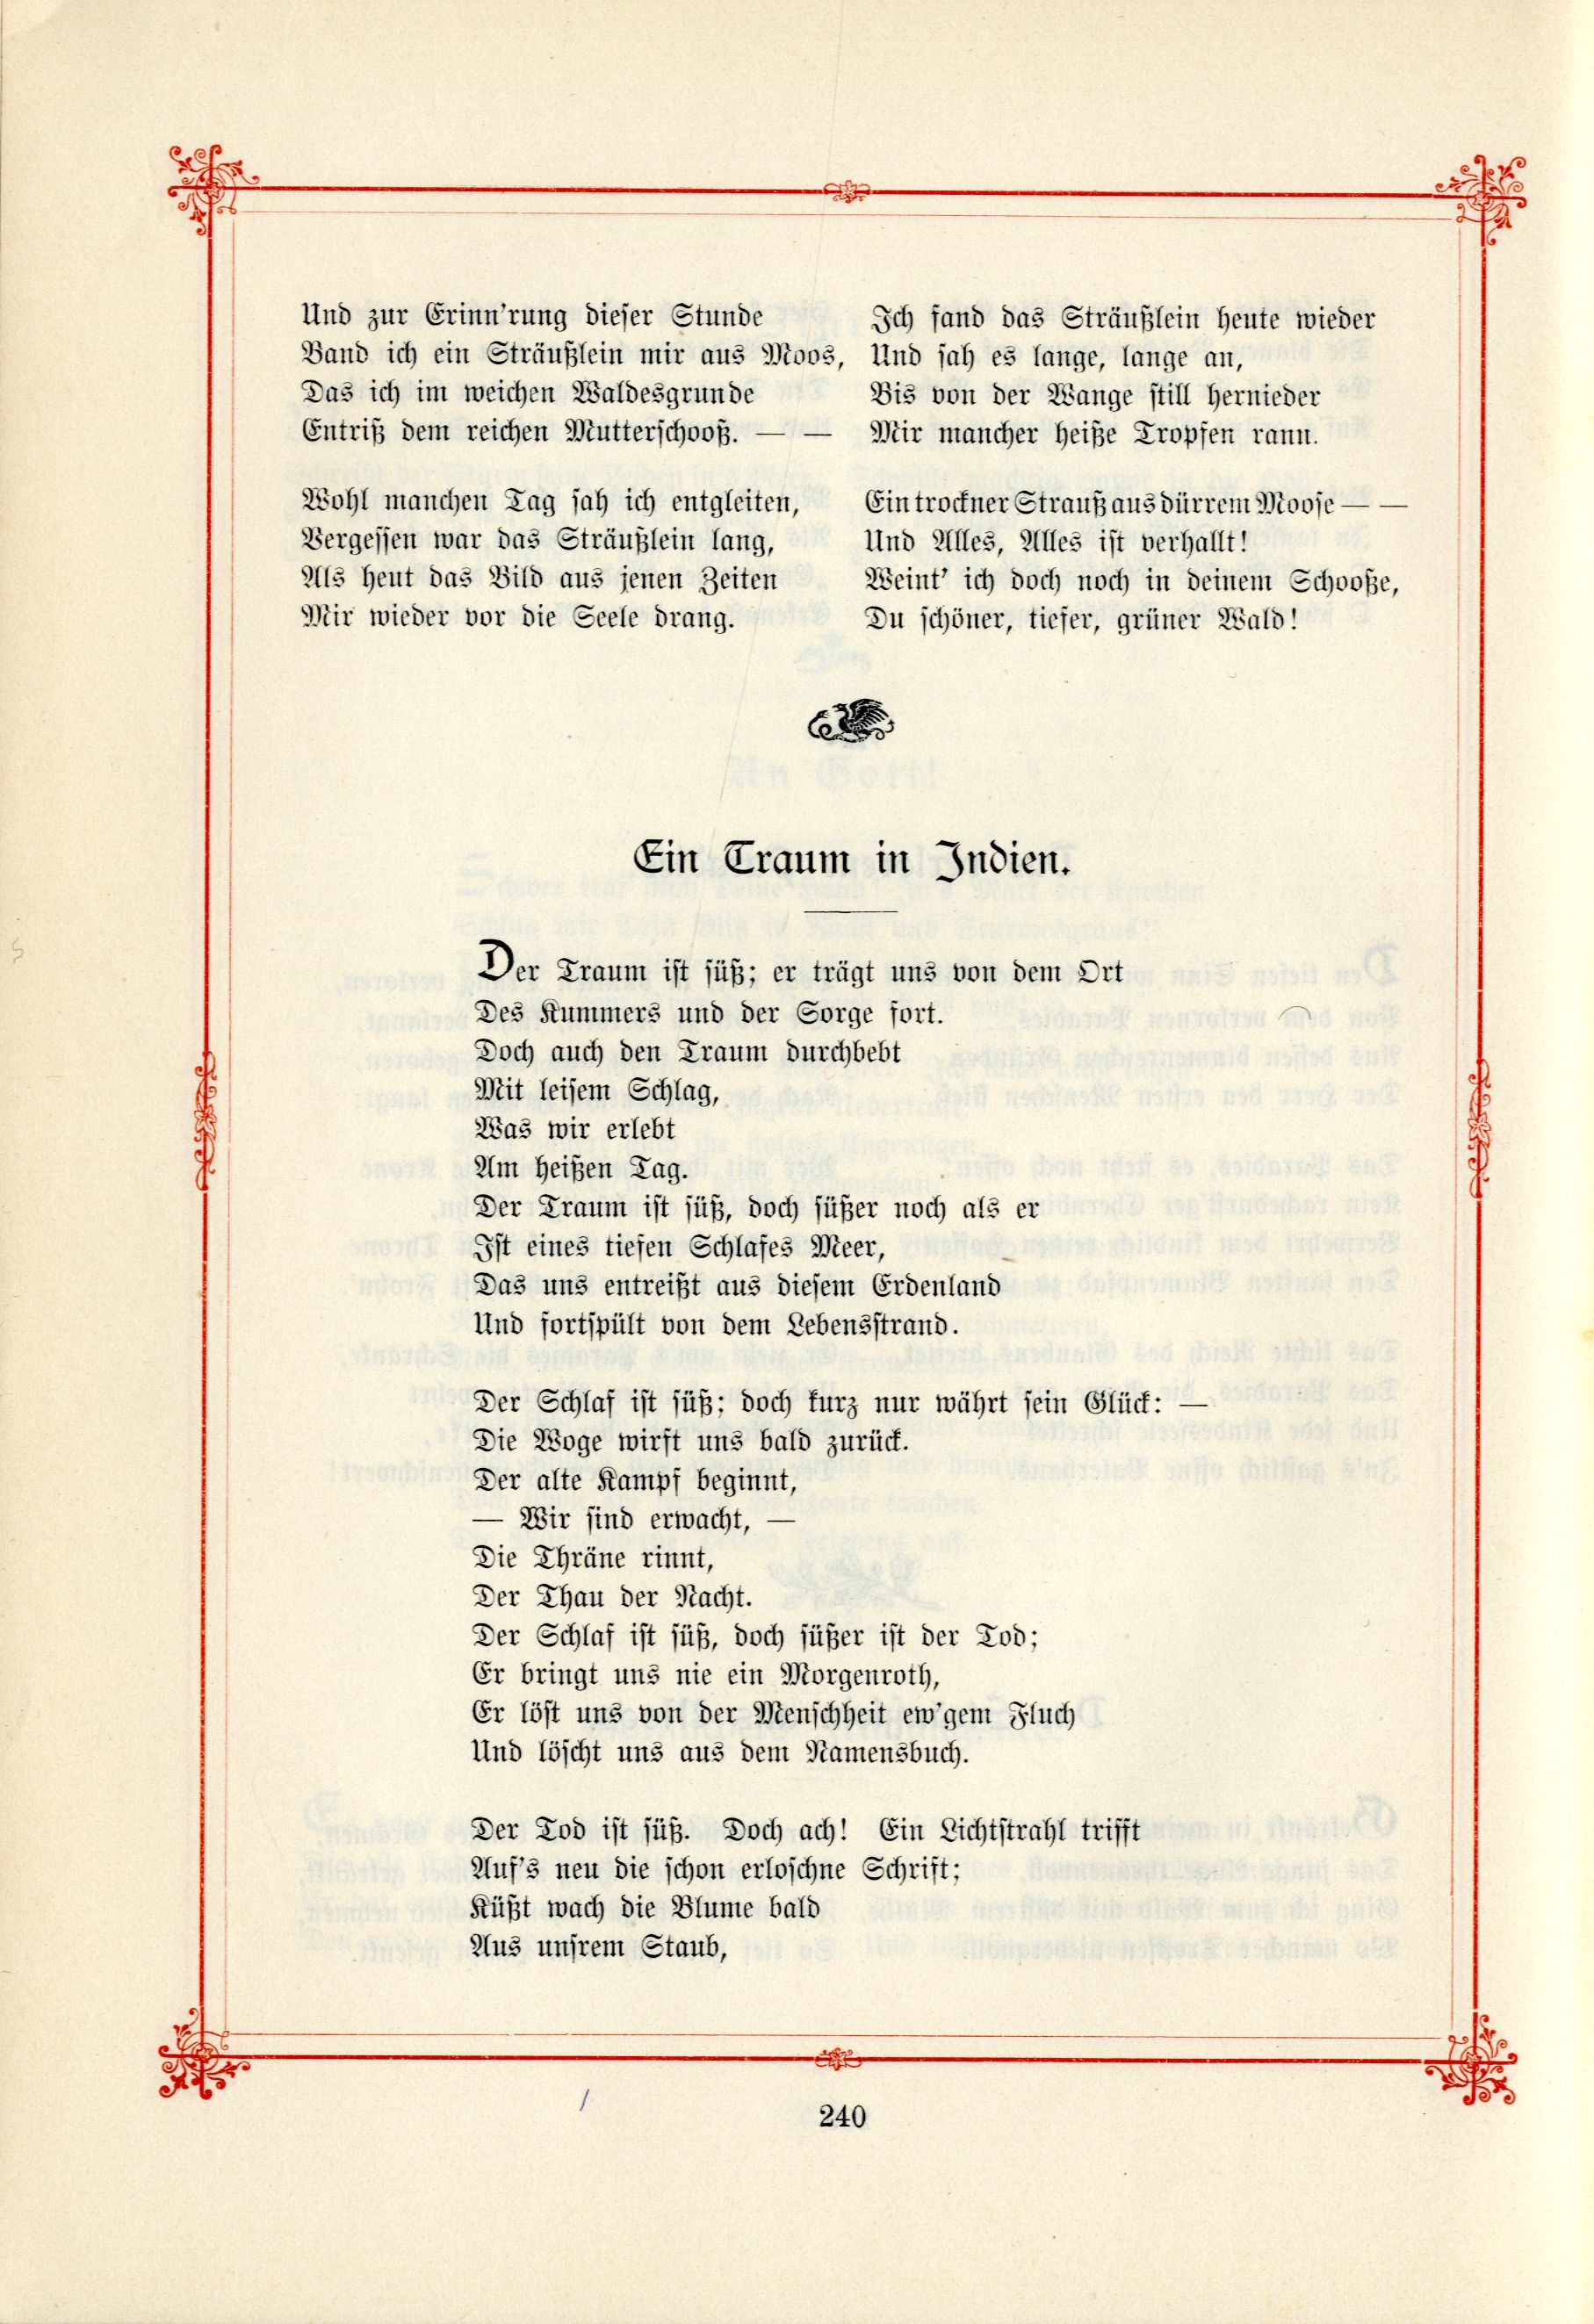 Das Baltische Dichterbuch (1895) | 286. (240) Main body of text